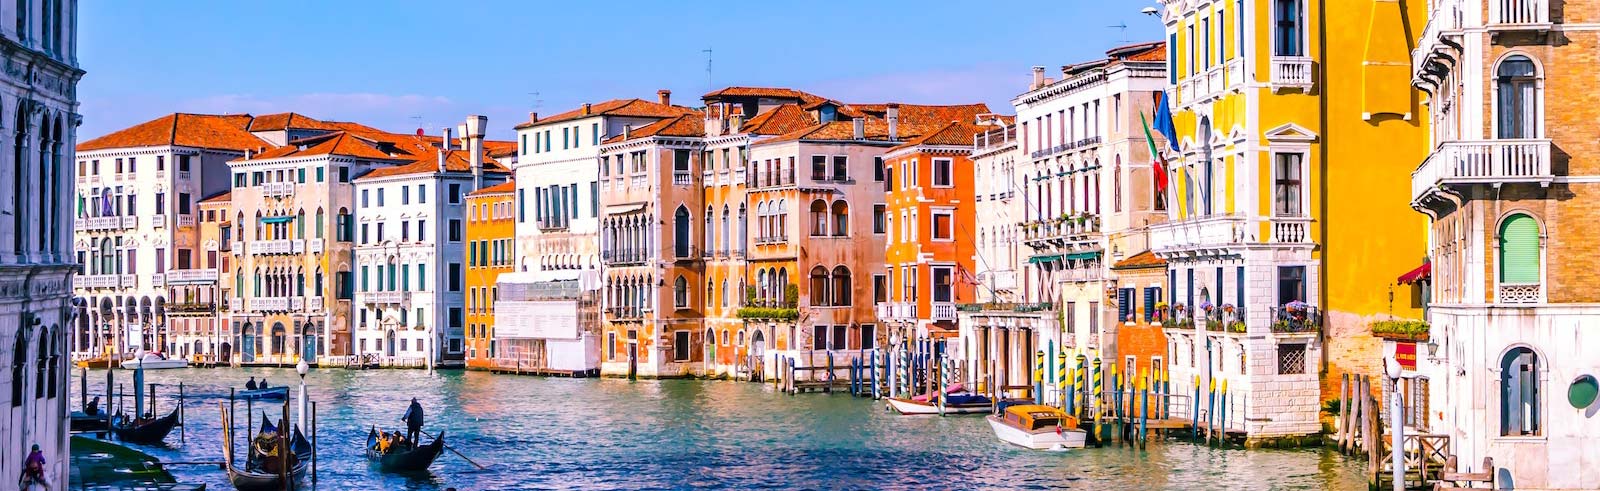 Canal de Veneza Itália com edifícios coloridos